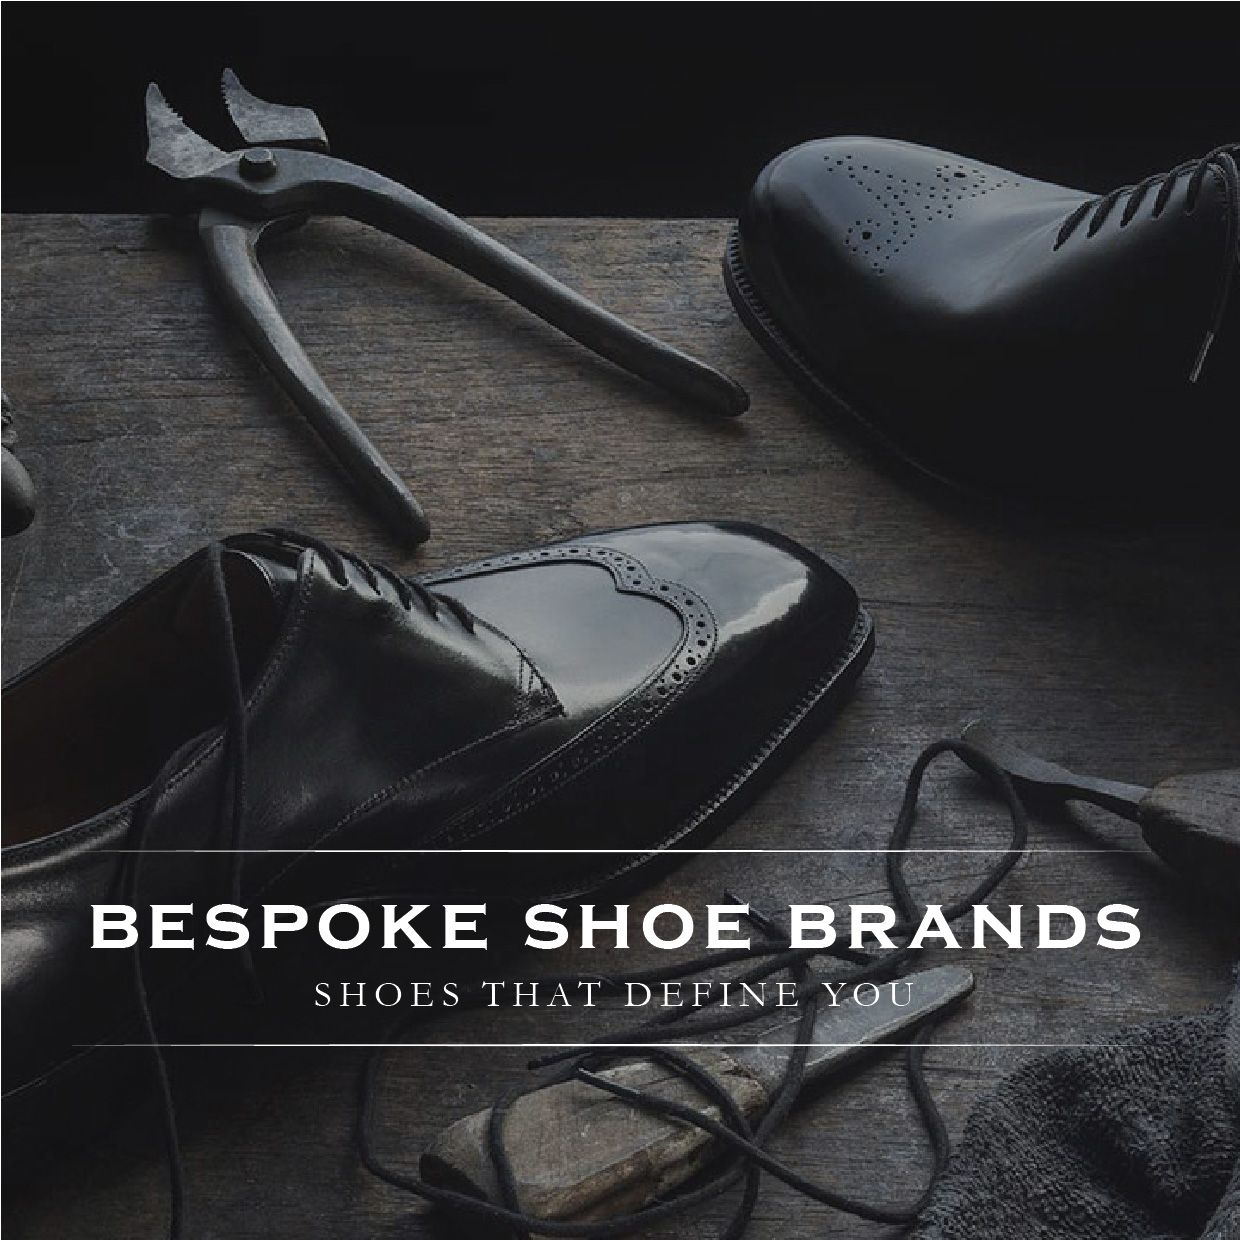 5 Classy Bespoke Shoe Brands